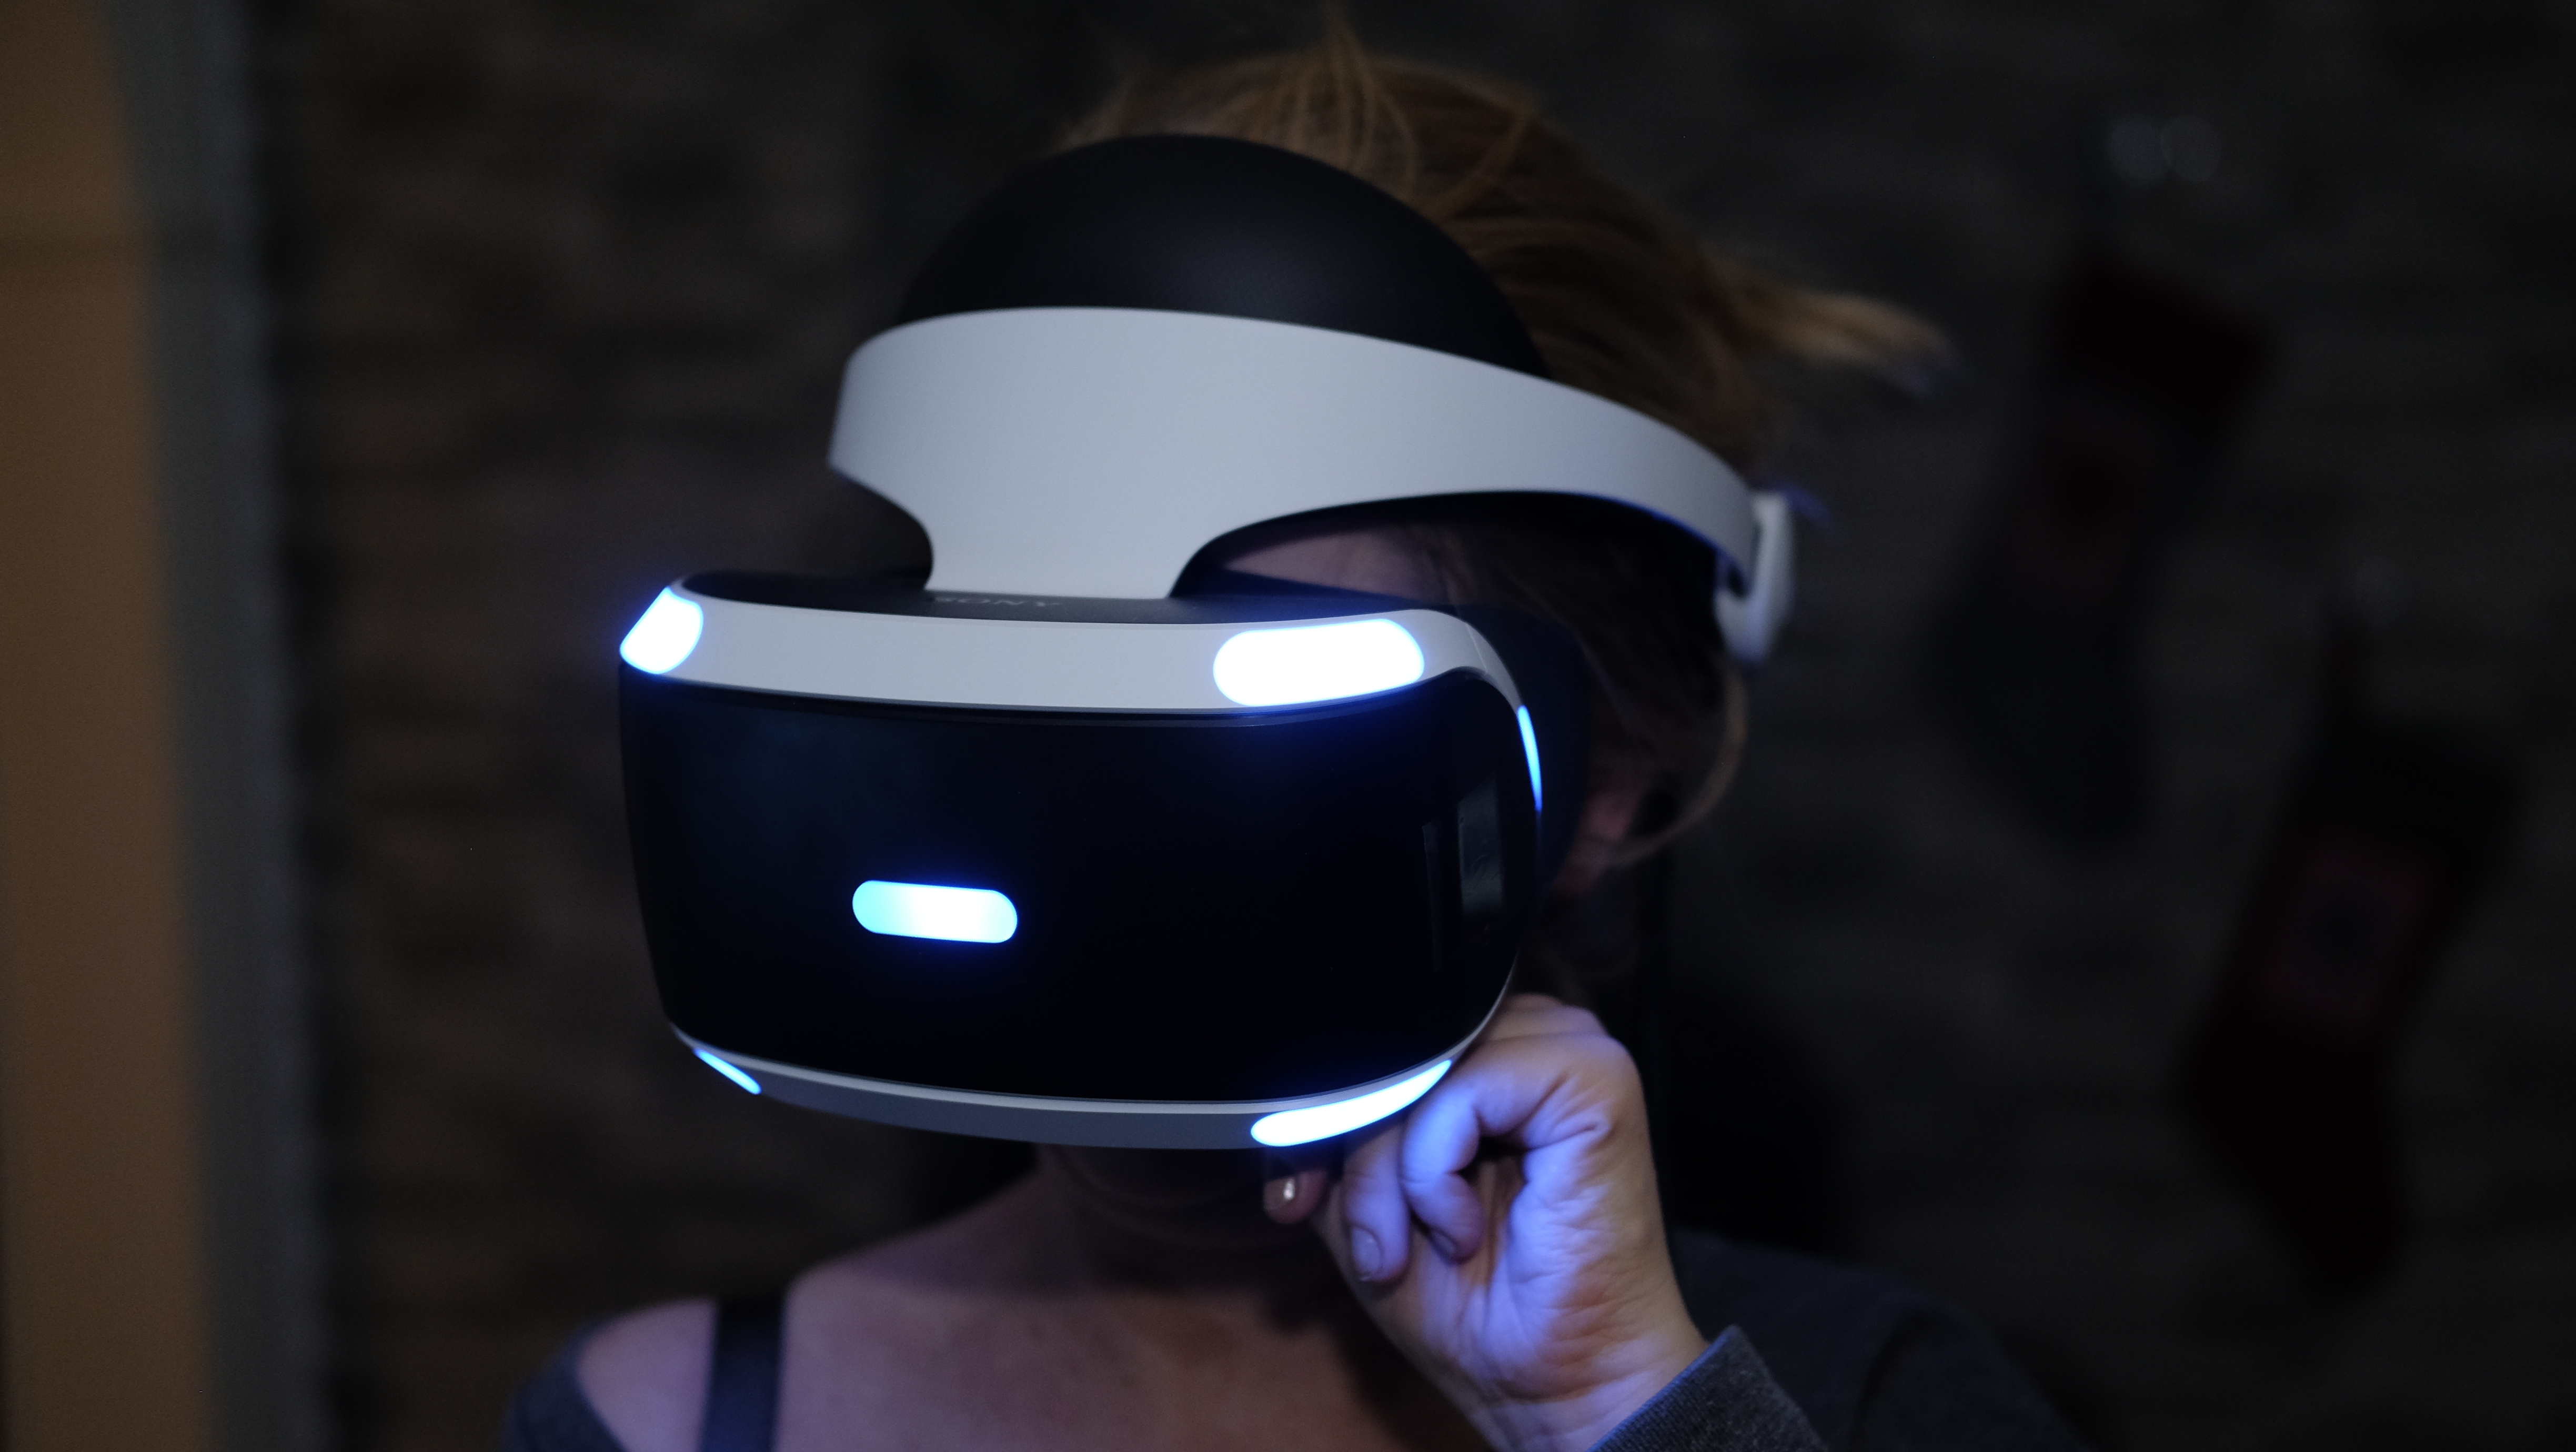 Du kan også bruke PlayStation VR på PC.